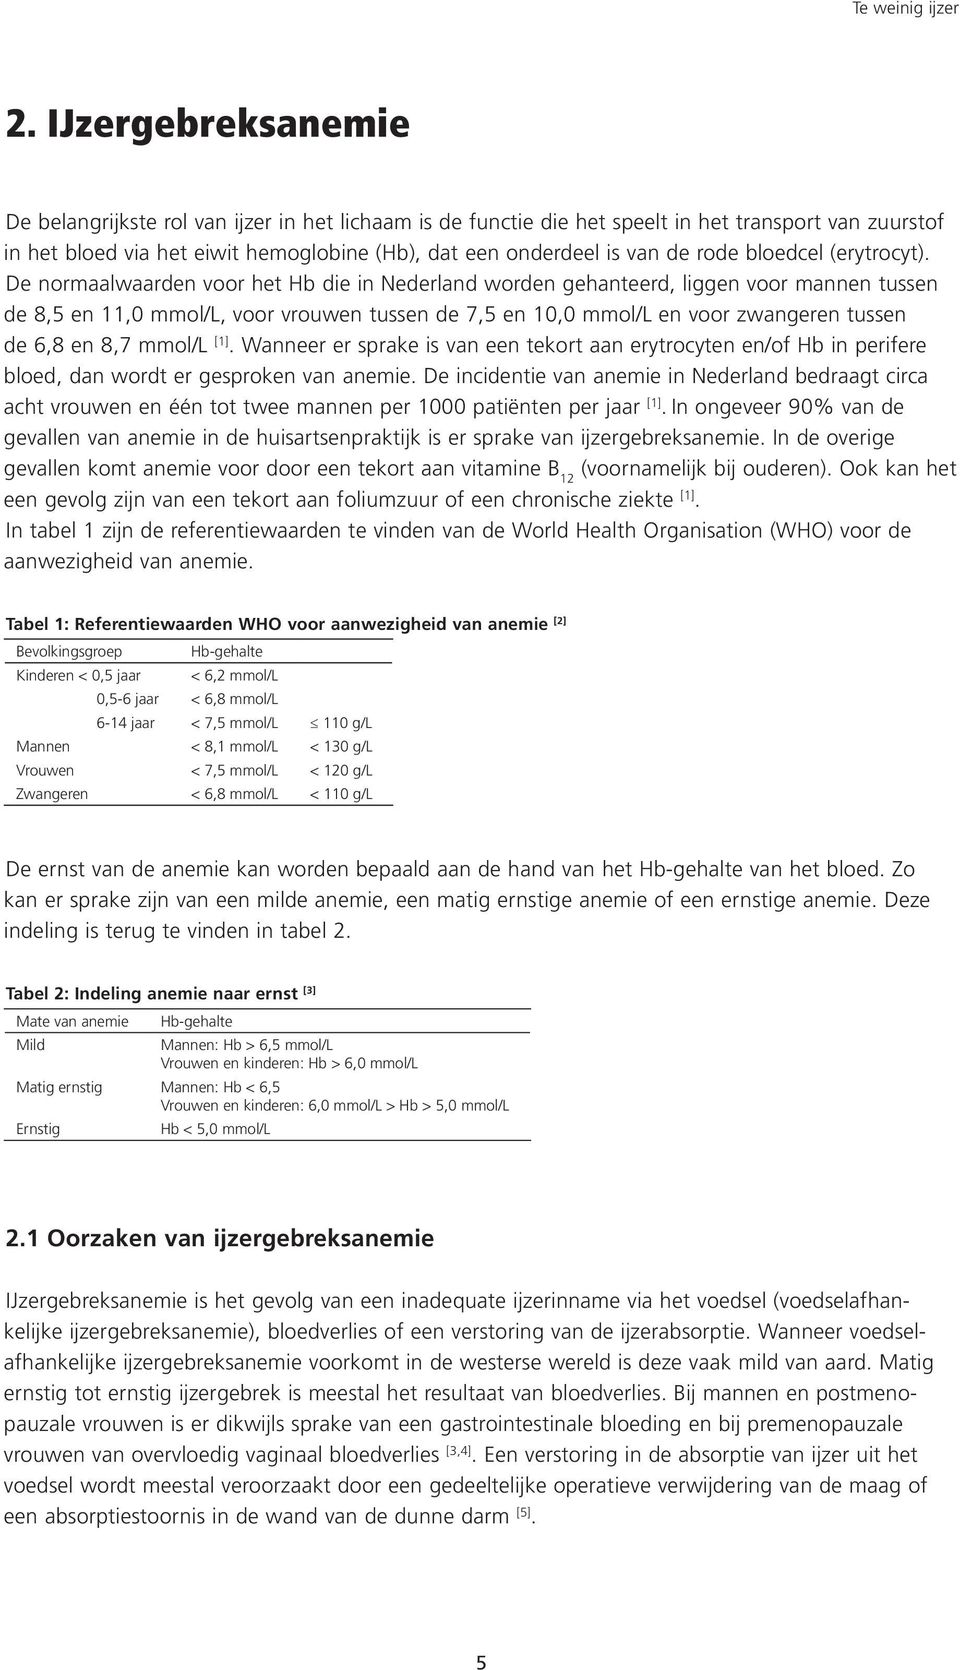 De normaalwaarden voor het Hb die in Nederland worden gehanteerd, liggen voor mannen tussen de 8,5 en 11,0 mmol/l, voor vrouwen tussen de 7,5 en 10,0 mmol/l en voor zwangeren tussen de 6,8 en 8,7